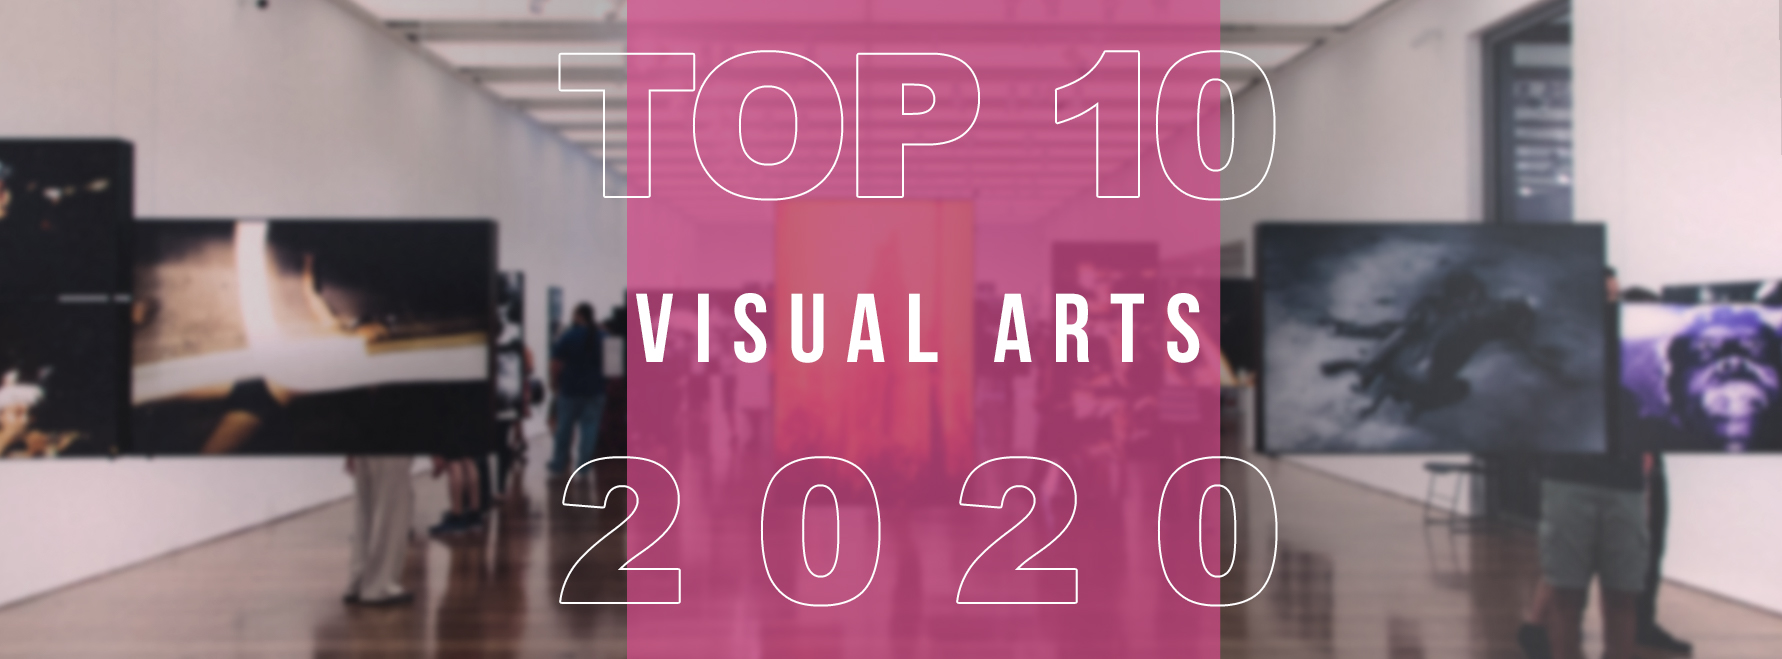 Top 10 visual arts of 2020